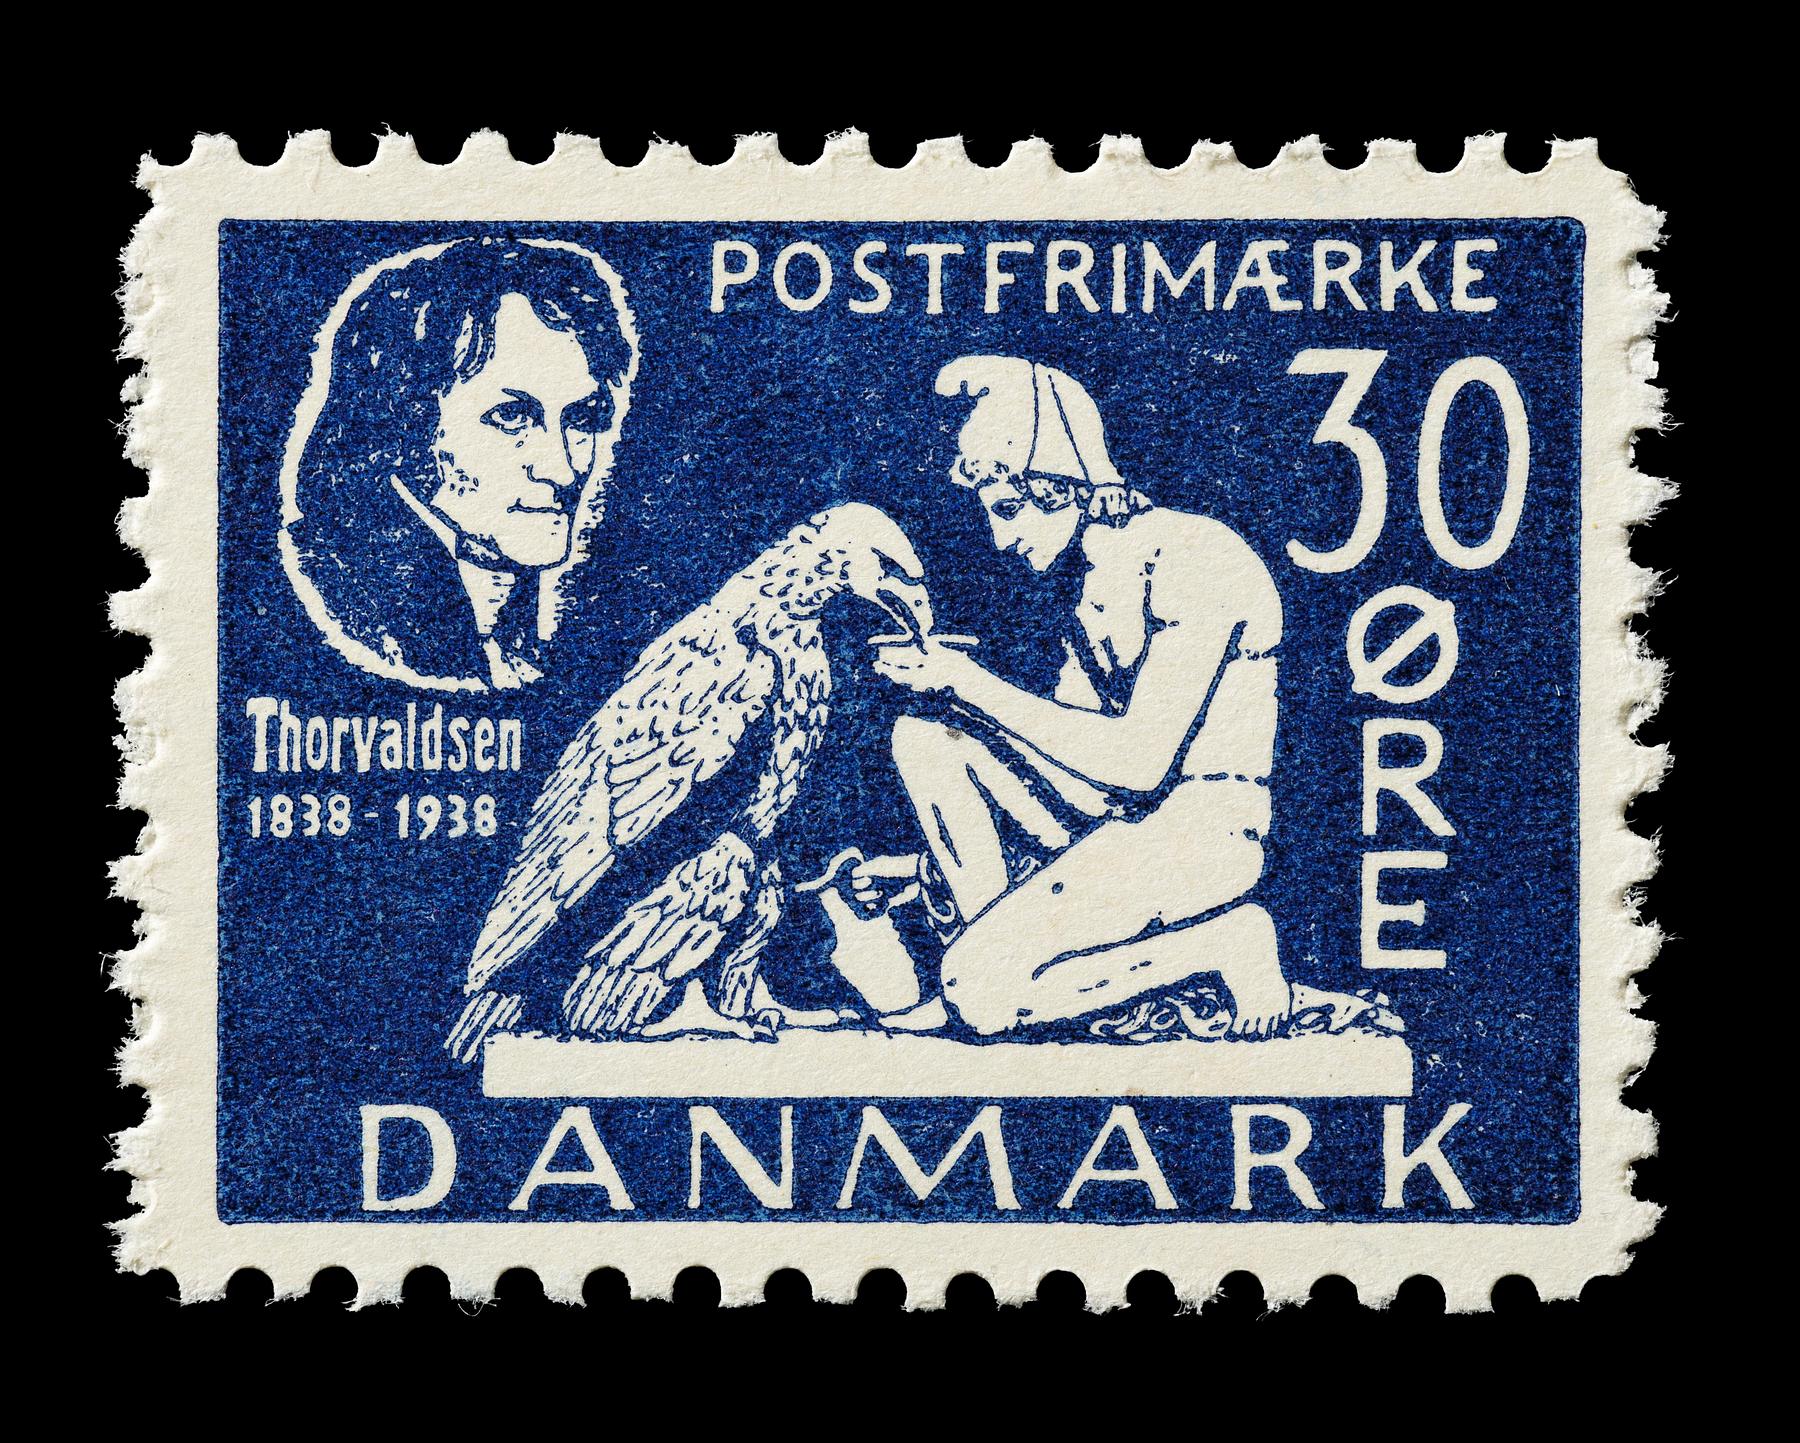 Prøvetryk af udkast til et dansk frimærke med Thorvaldsens Ganymedes med Jupiters ørn, E2341,25